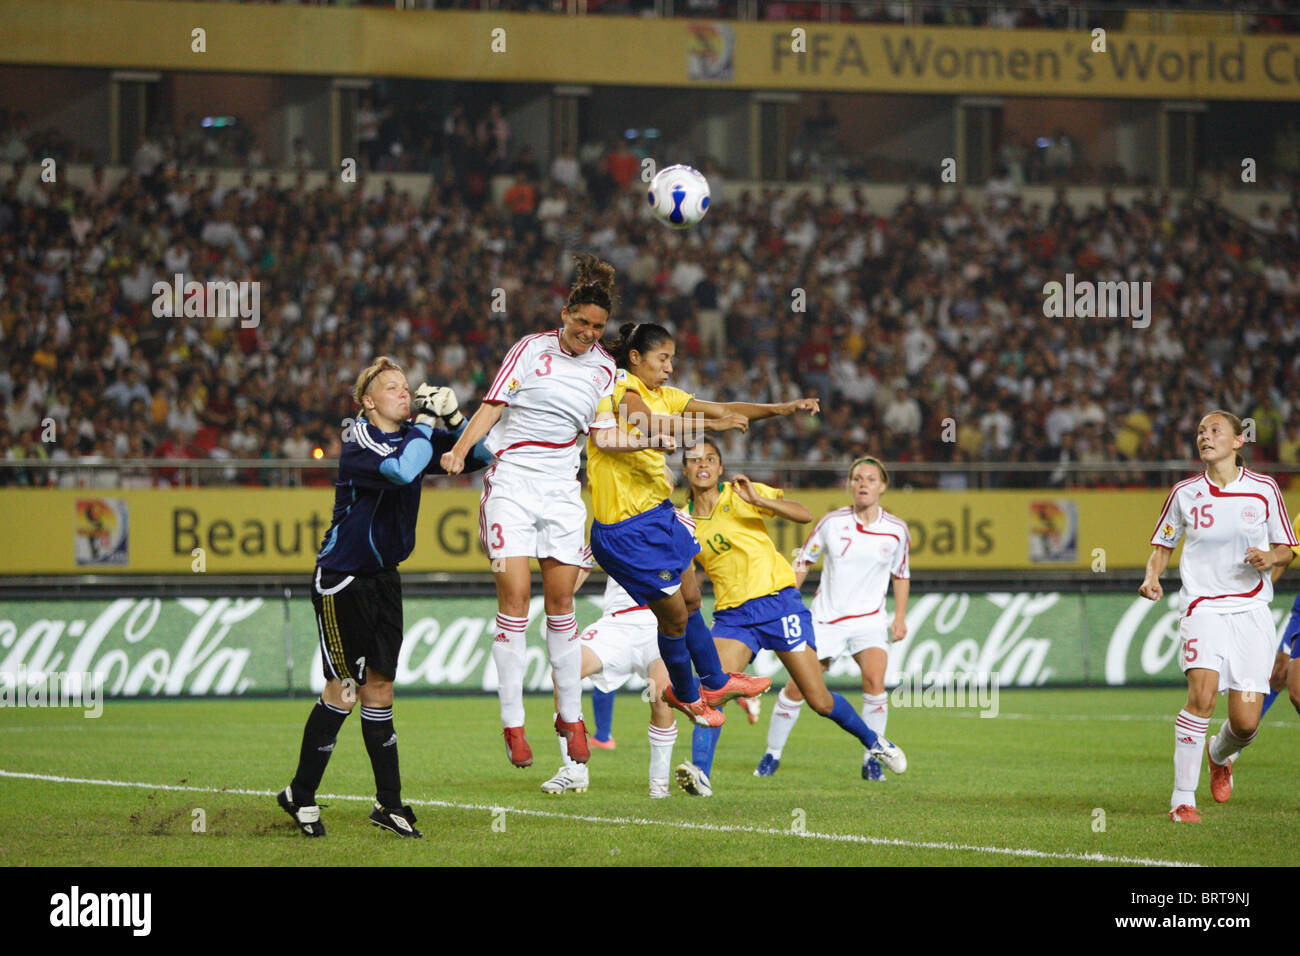 Katrine Pedersen aus Dänemark (3) und Cristiane of Brazil (r) Kampf für einen Header während der Weltmeisterschaft der Frauen 2007 überein. Stockfoto